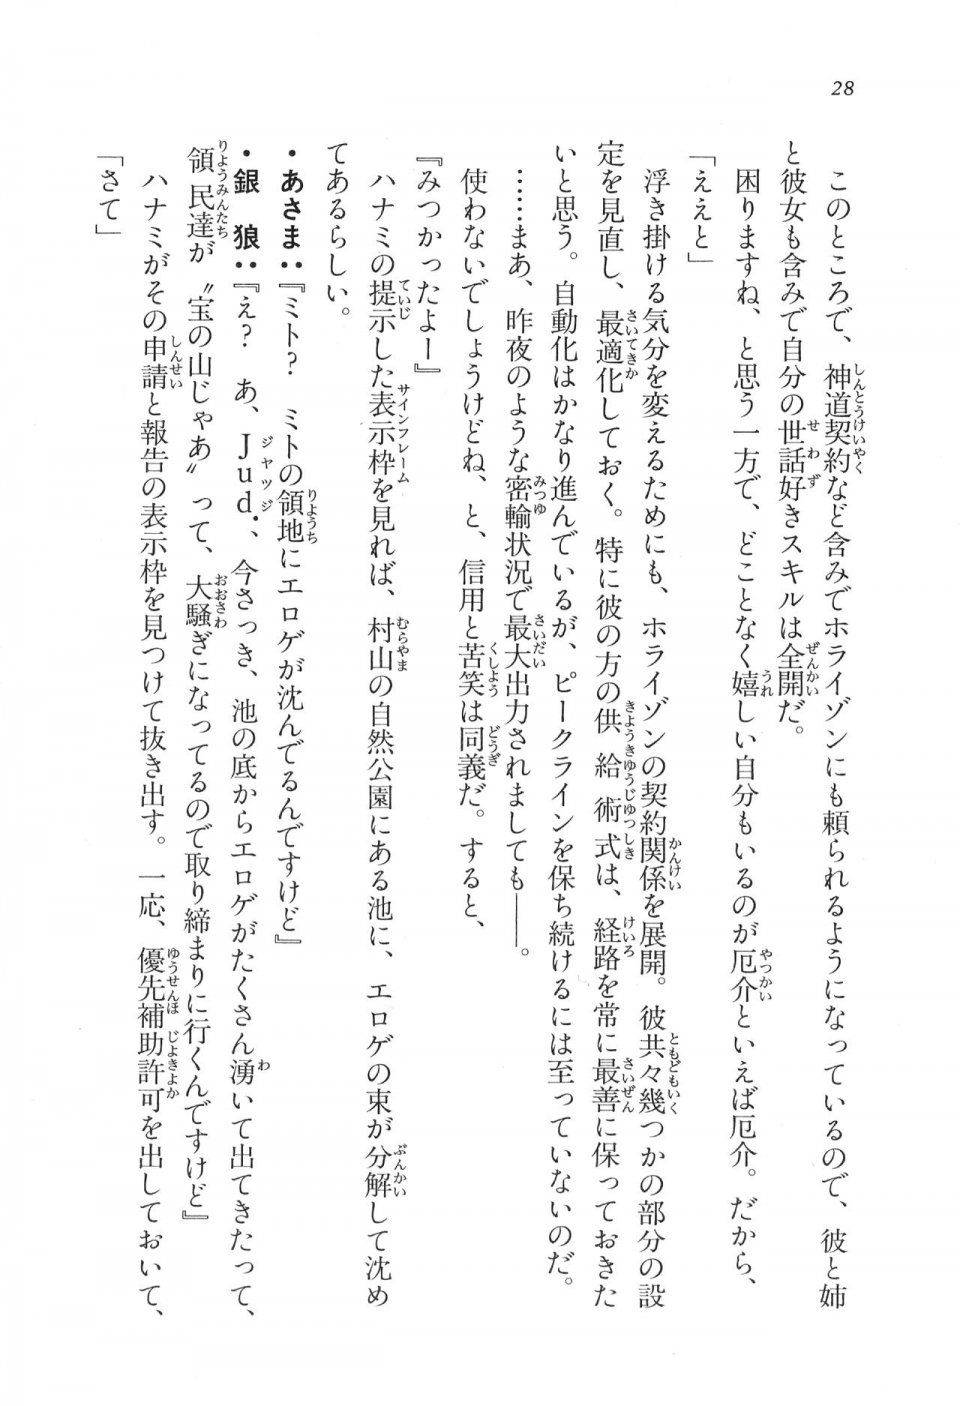 Kyoukai Senjou no Horizon LN Vol 11(5A) - Photo #29